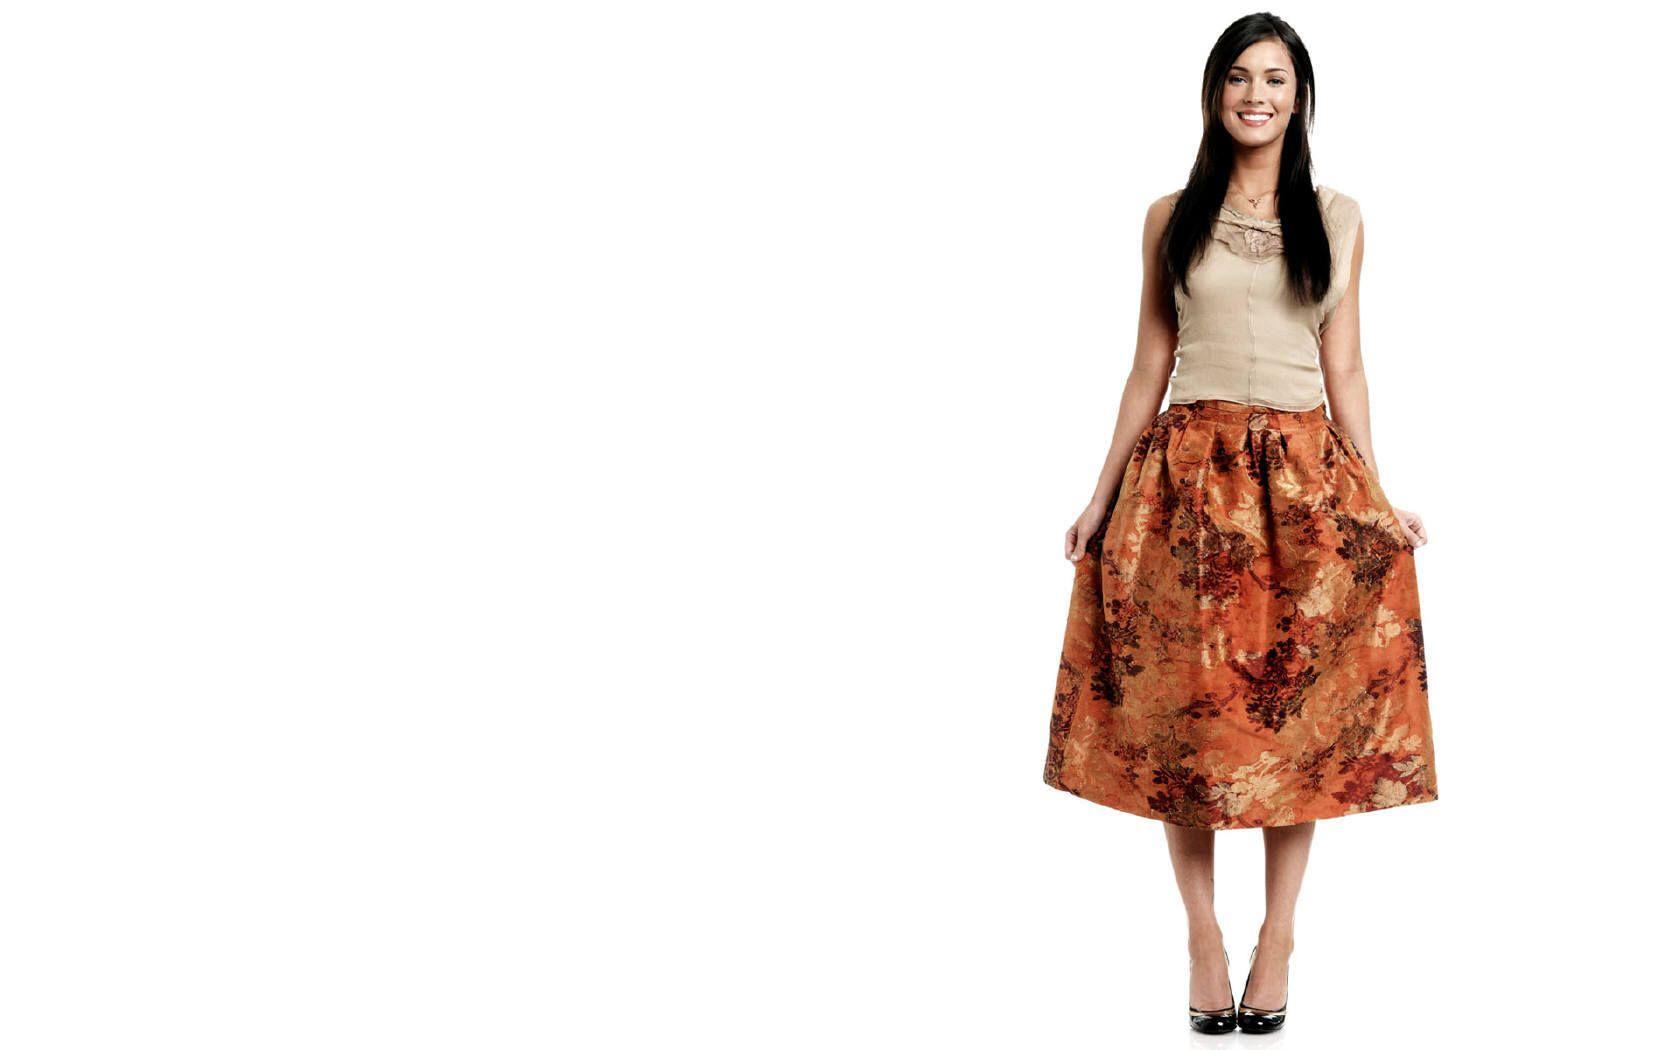 Megan Fox Orange Skirt wallpaper. Megan Fox Orange Skirt stock